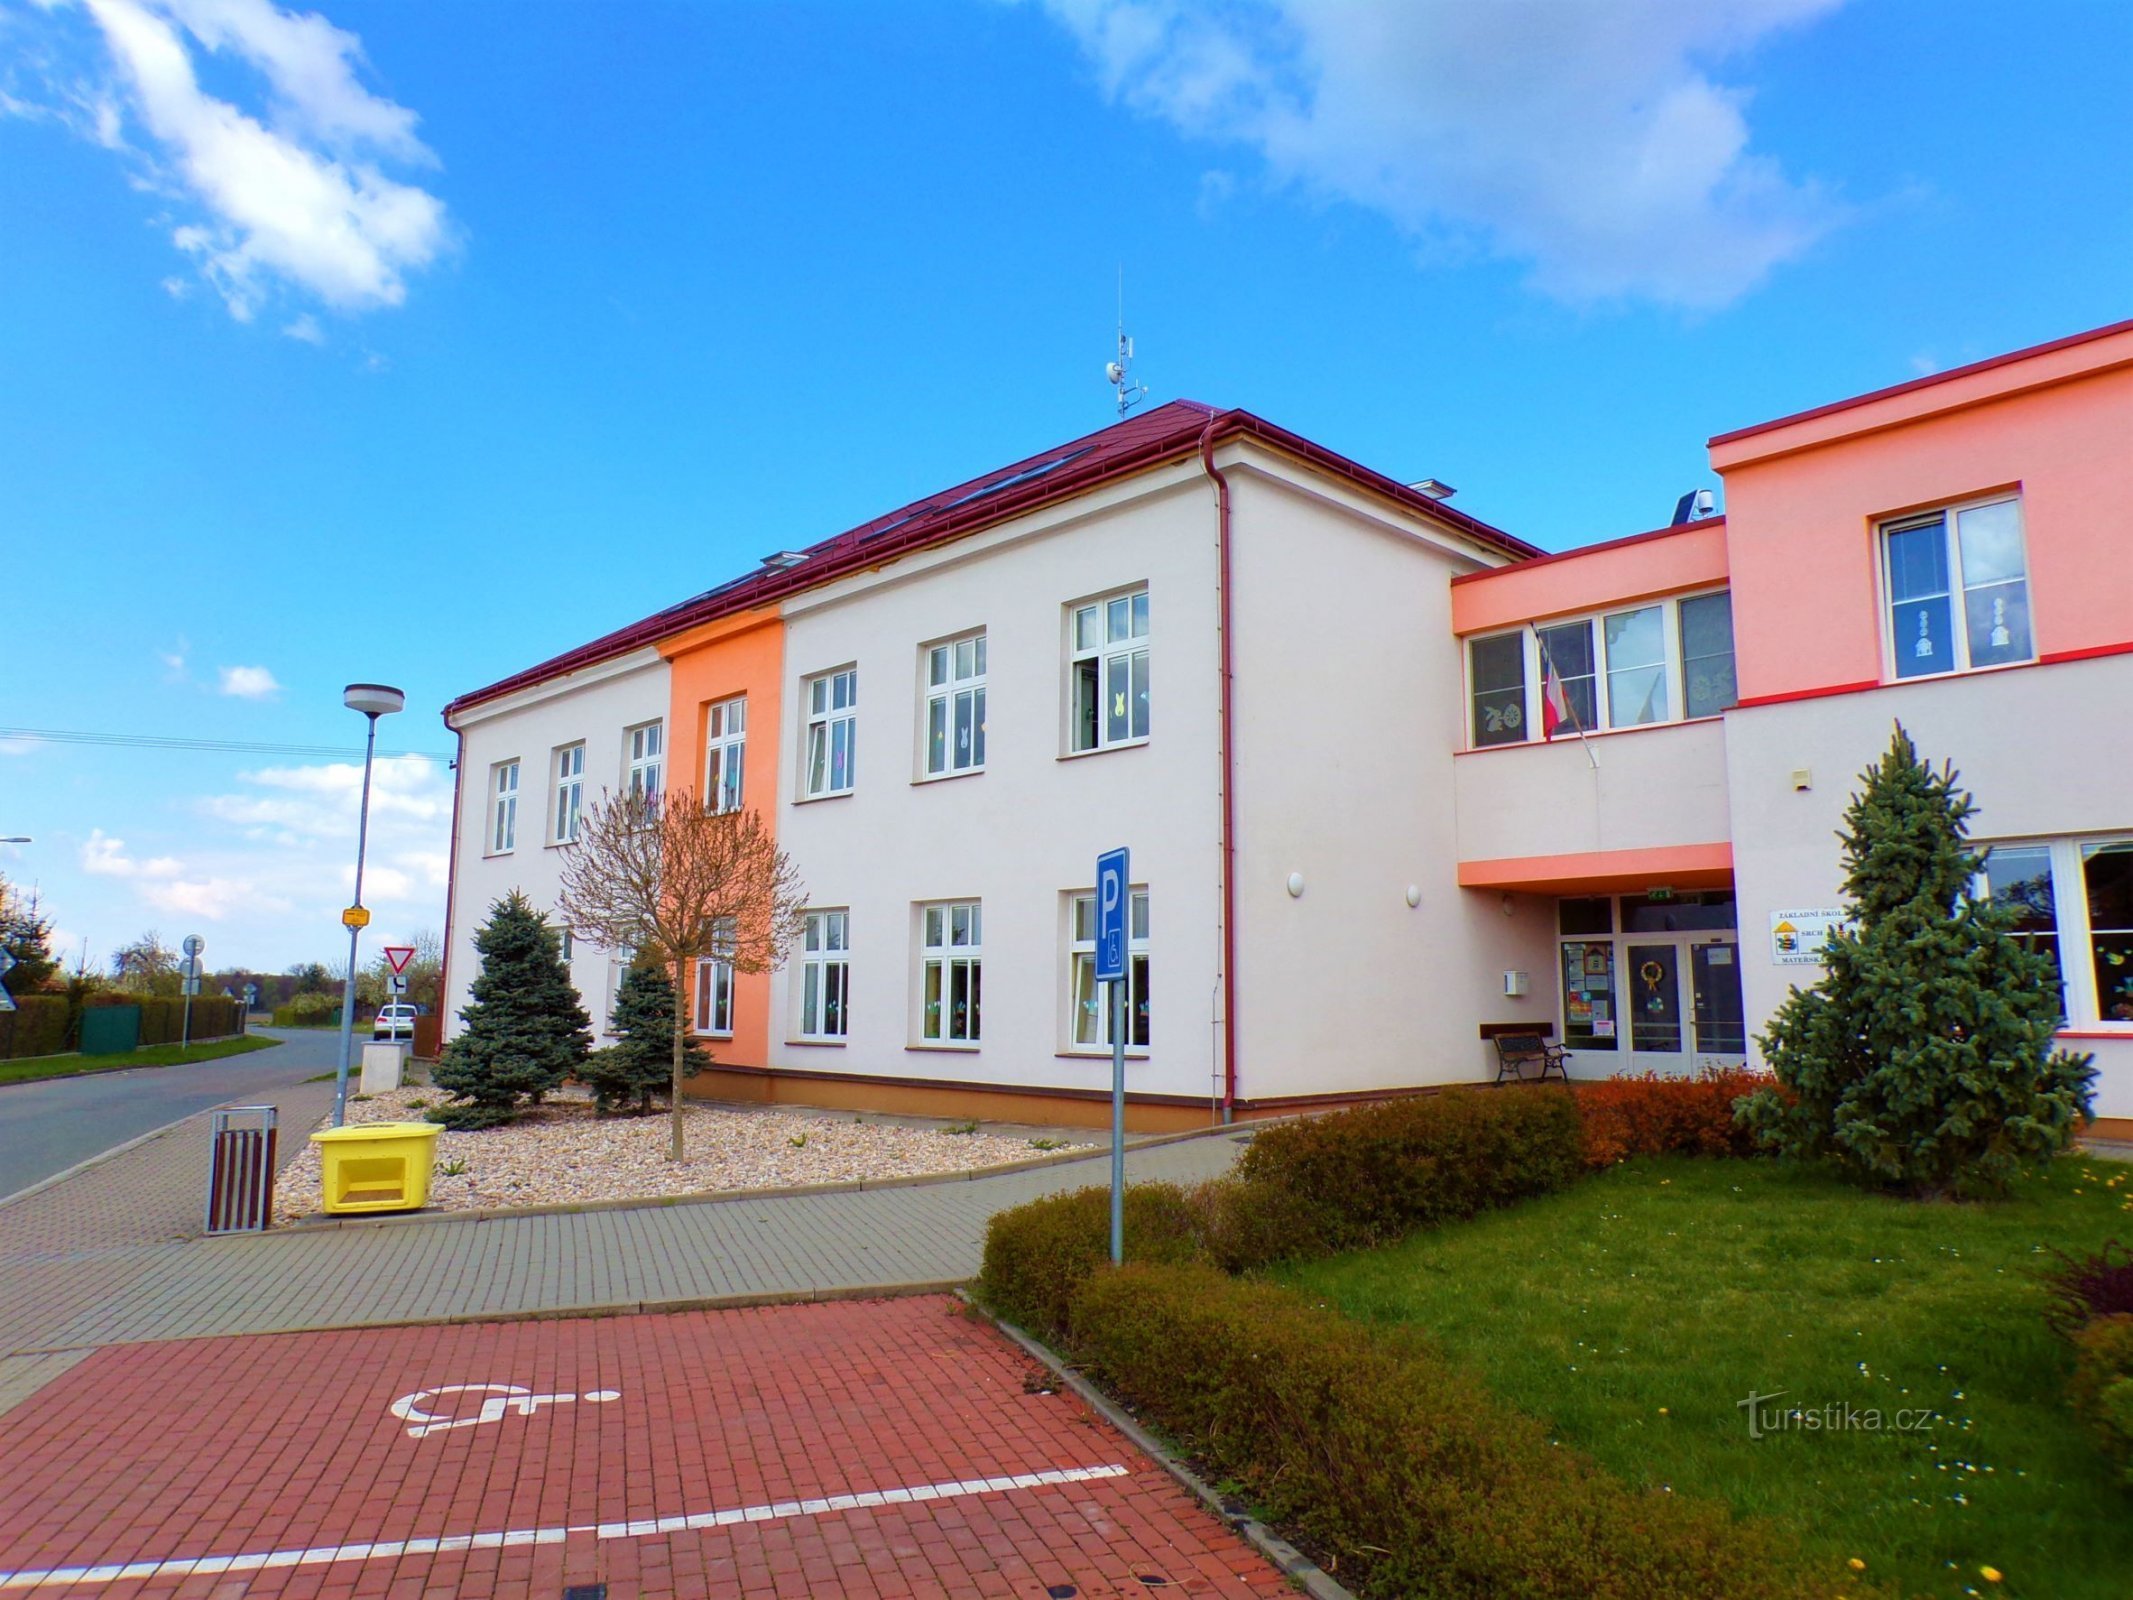 Škola (Srch, 27.4.2022)